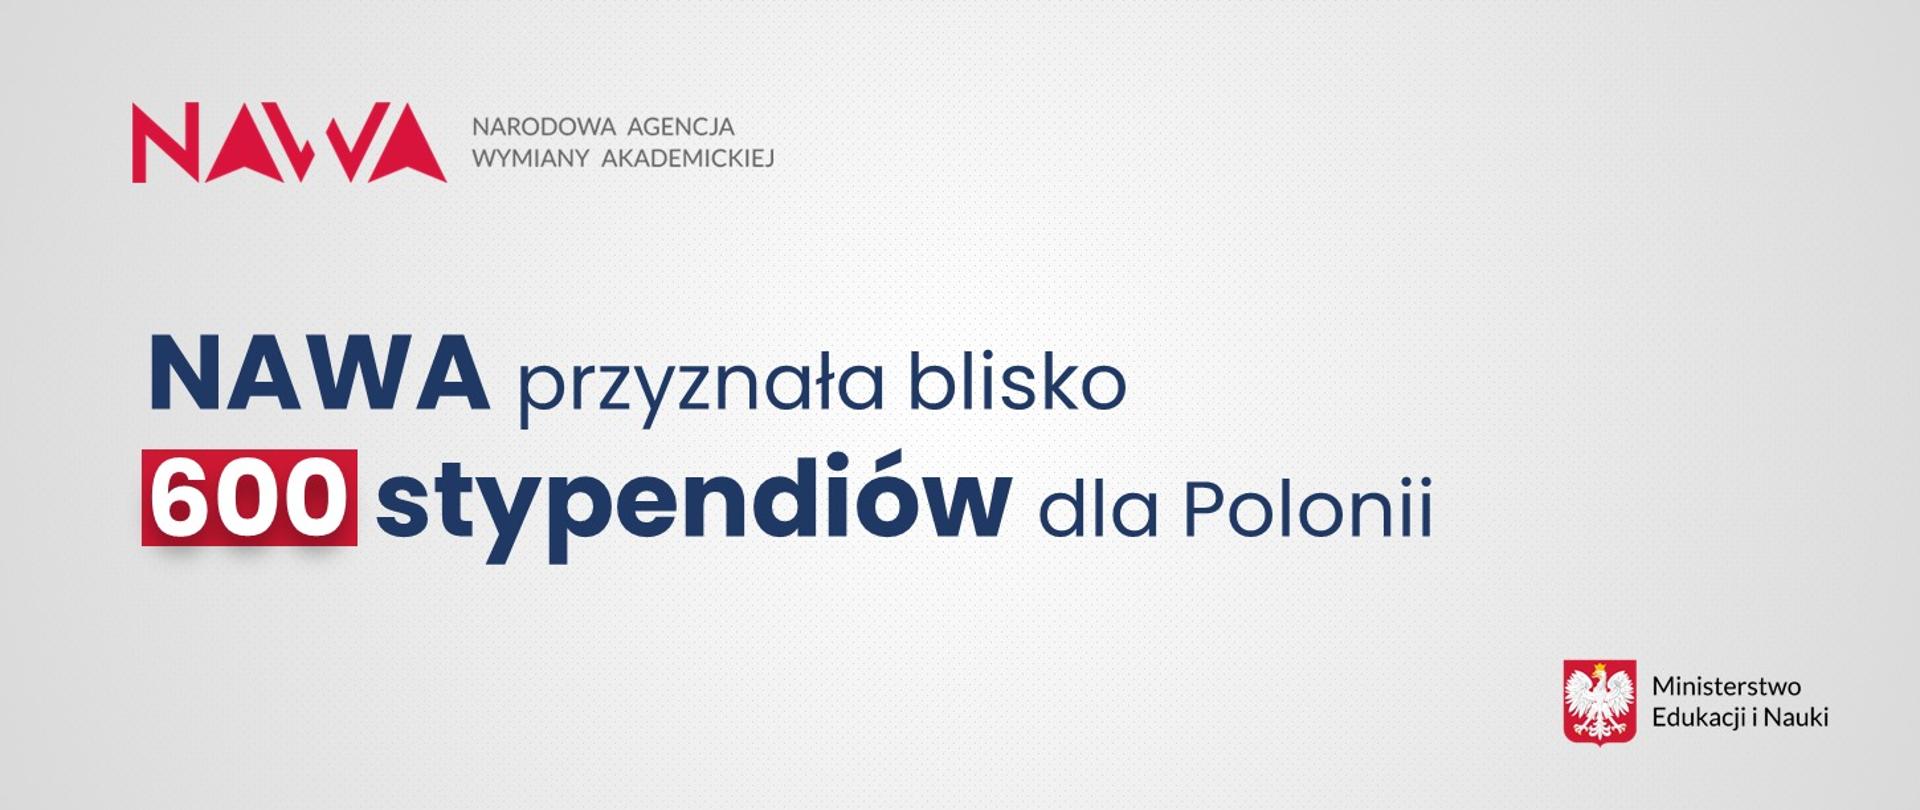 Logotyp NAWA i naspis NAWA przyznała blisko 600 stypendiów dla Polonii